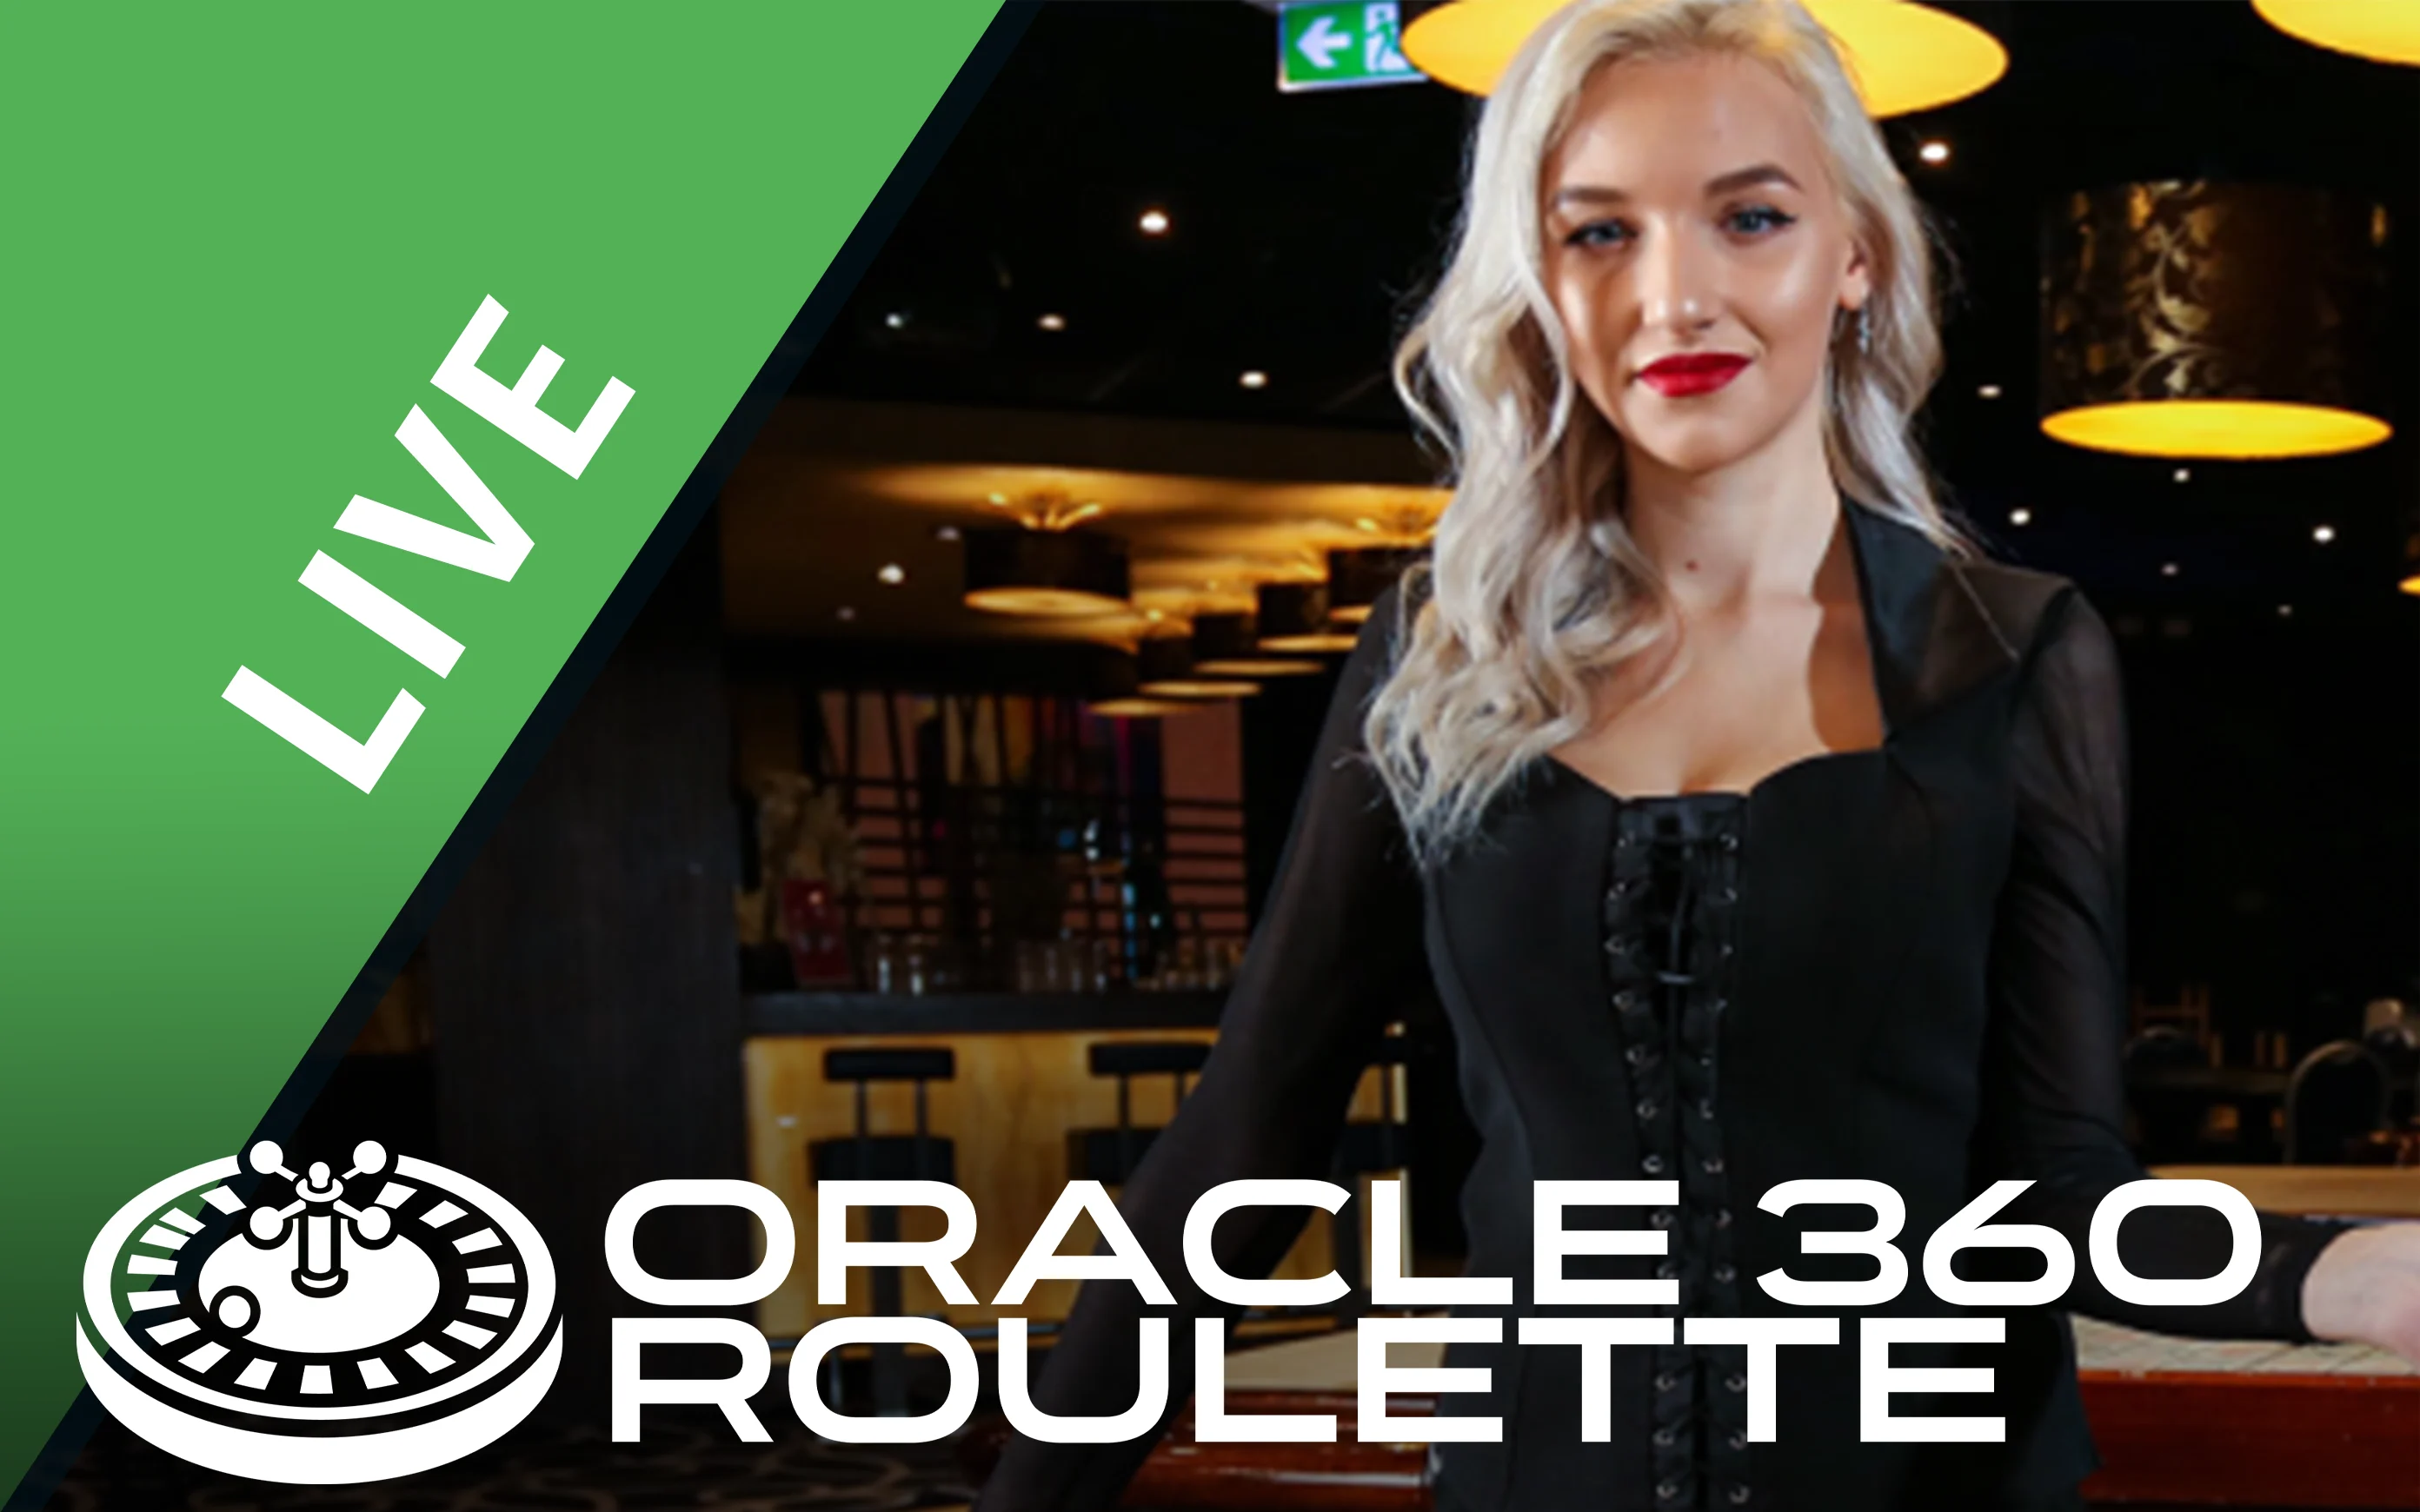 Starcasino.be online casino üzerinden Oracle 360 Roulette oynayın